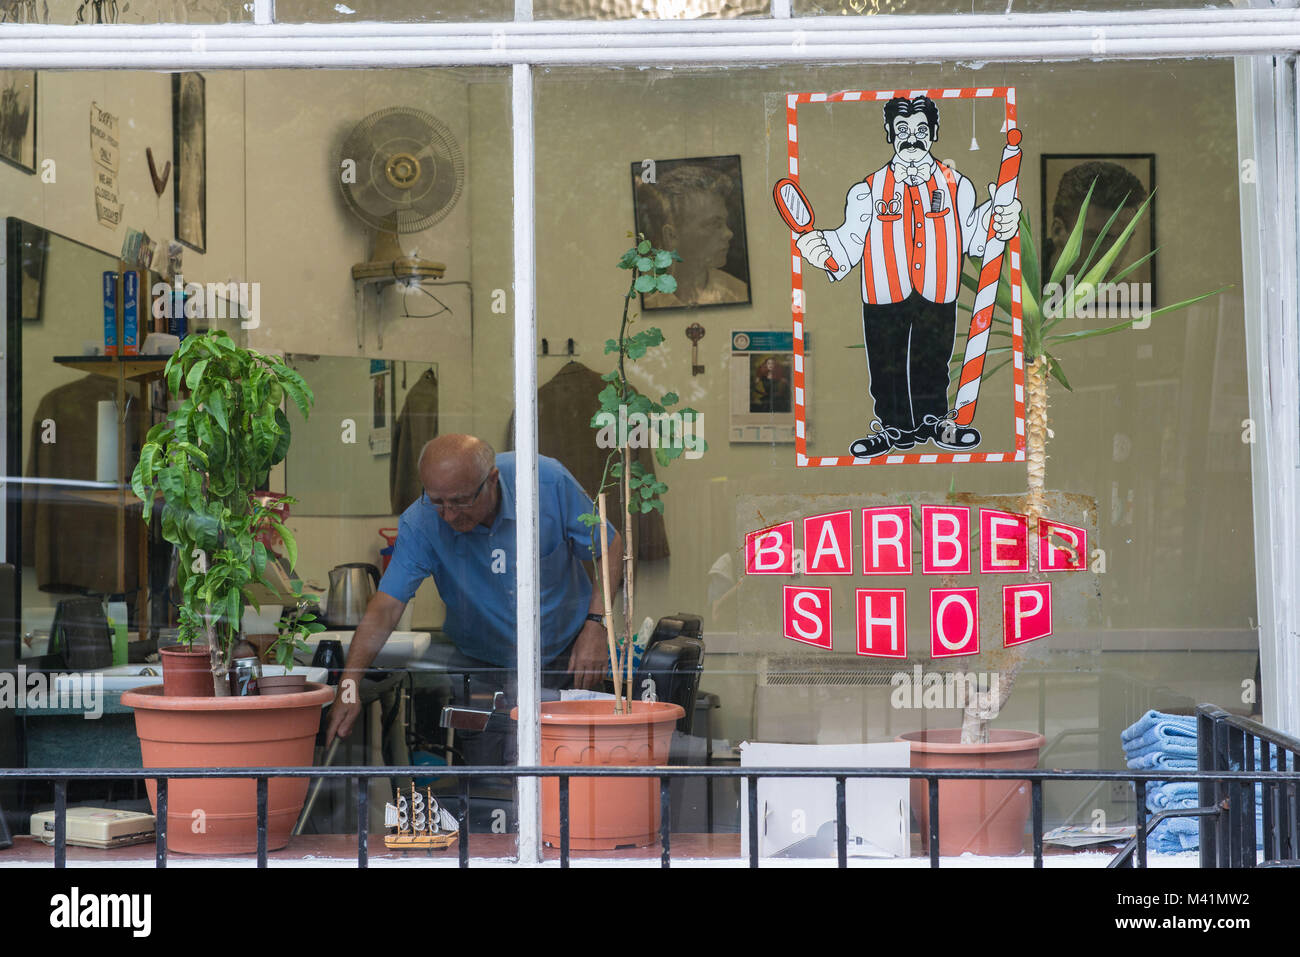 Espejo para barberia, peluqueria Camden